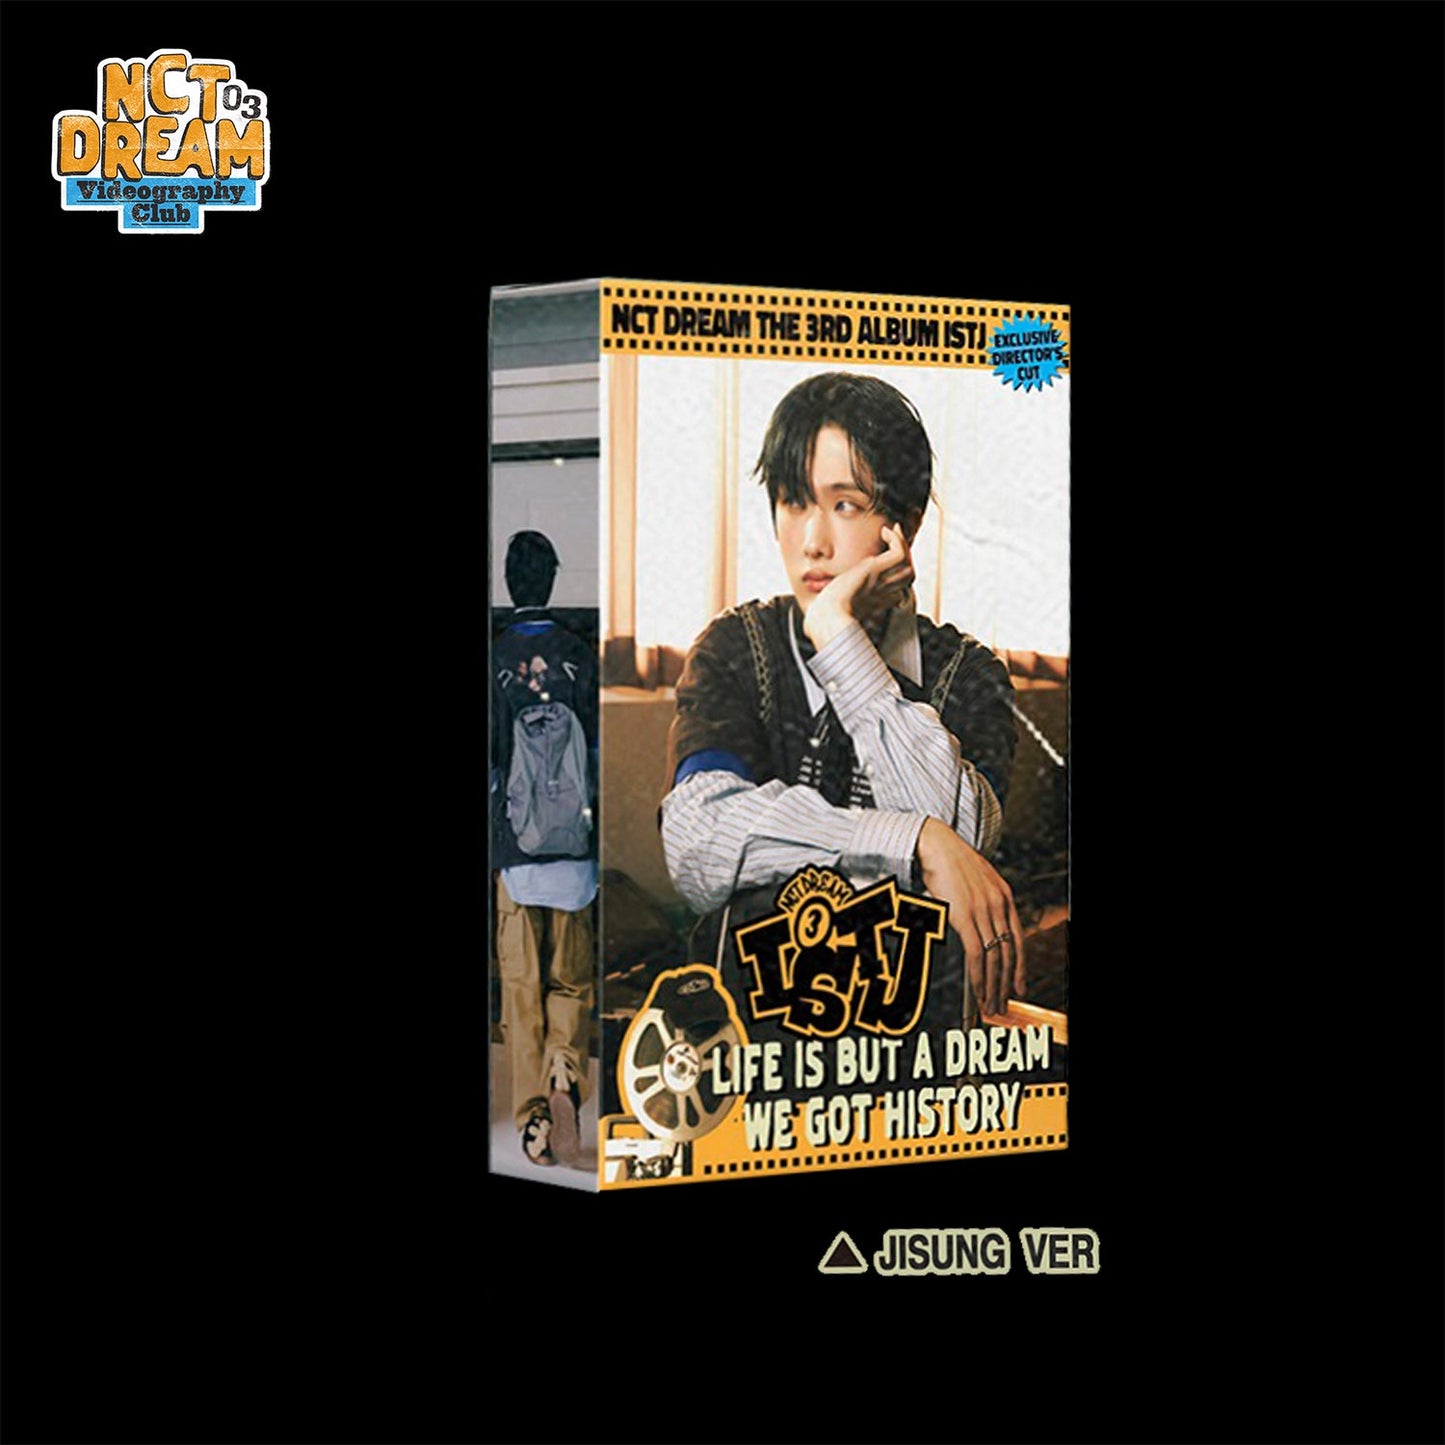 NCT DREAM 3RD ALBUM 'ISTJ' (7DREAM QR) JISUNG VERSION COVER